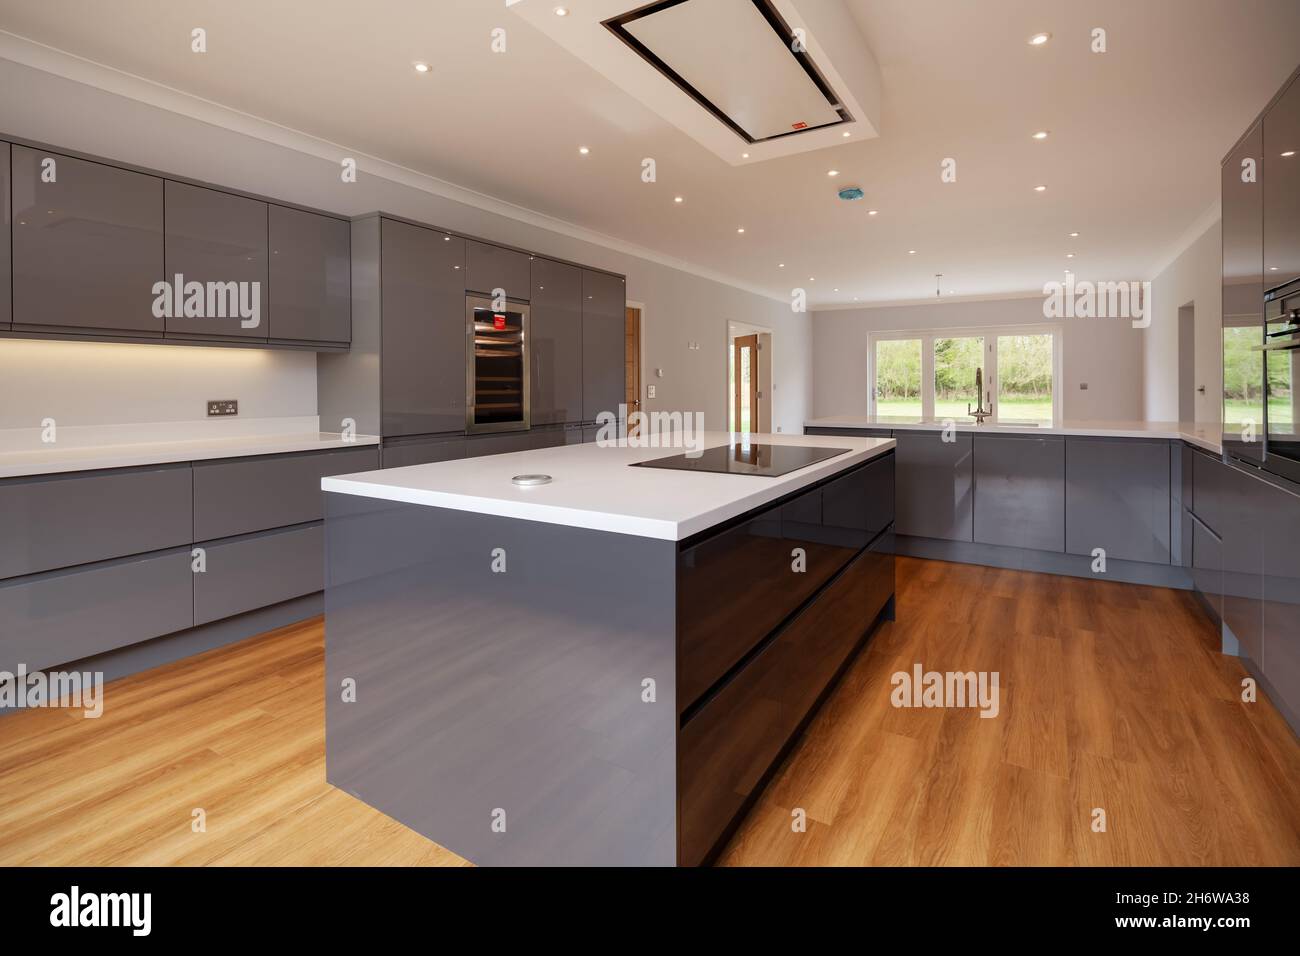 Clavering, Inglaterra - Abril 6 2020: Nueva CASA LUXURY Cocina interior con amplia gama de unidades de color gris con electrodomésticos incorporados Foto de stock